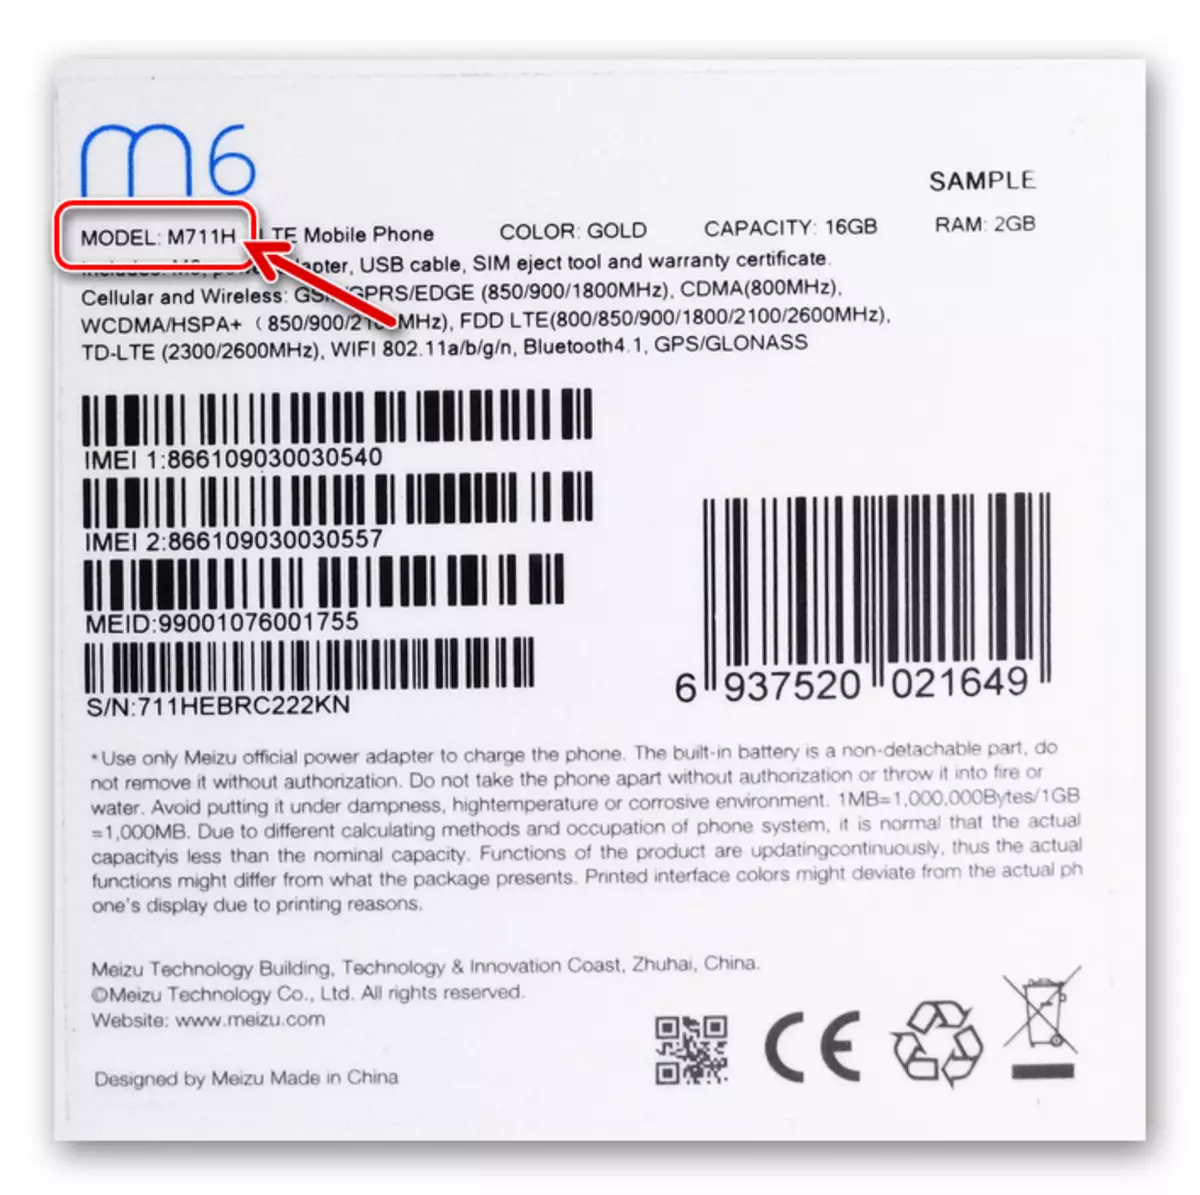 Meizu M6 Modificação do smartphone na embalagem do dispositivo